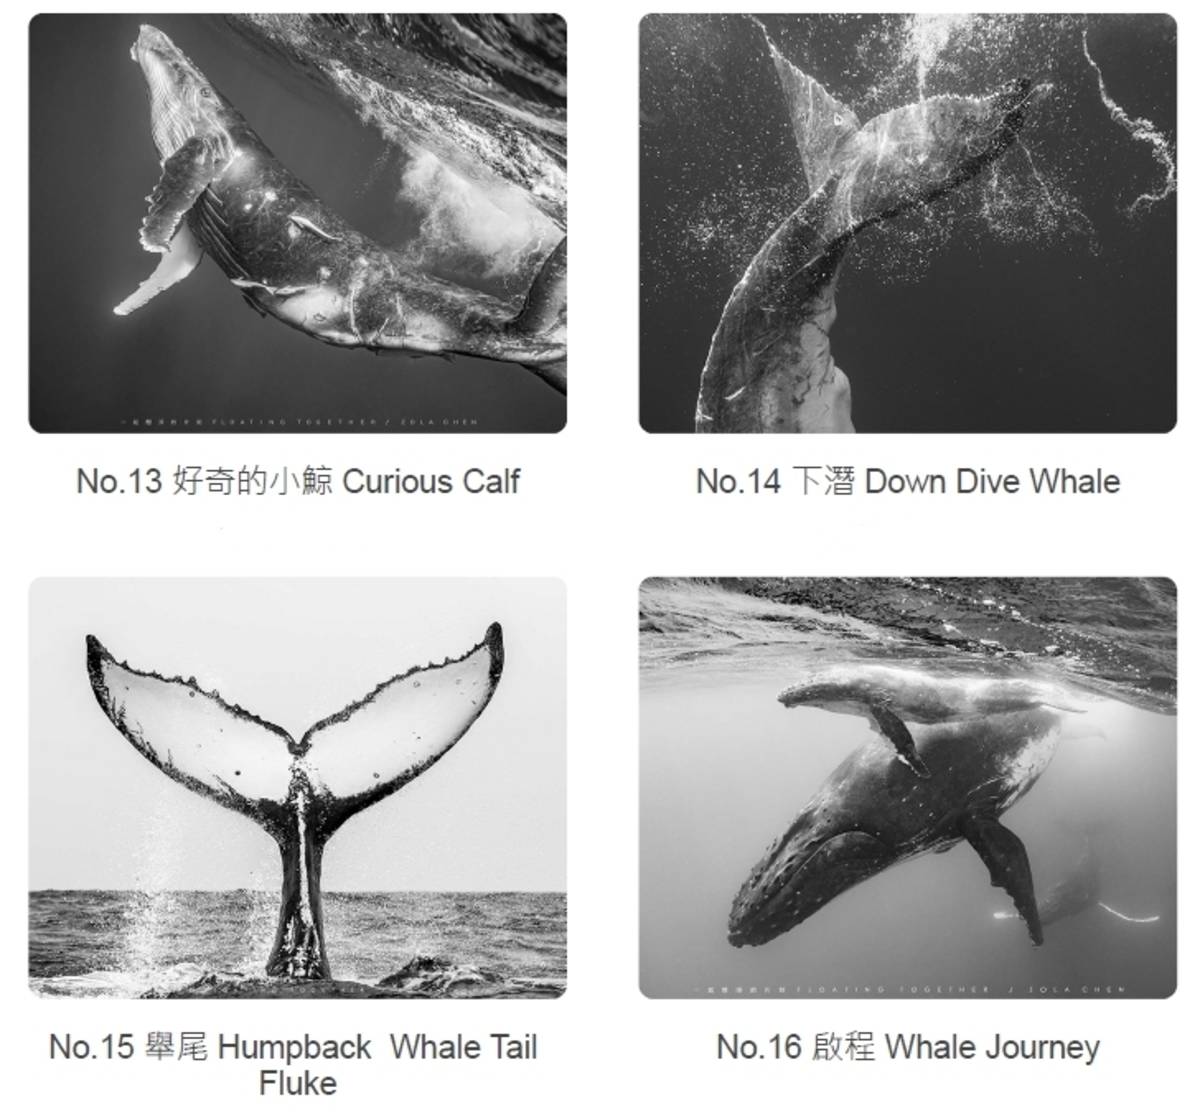 展出的攝影作品以黑白影像呈現，透過光影凸顯大翅鯨型態之美。